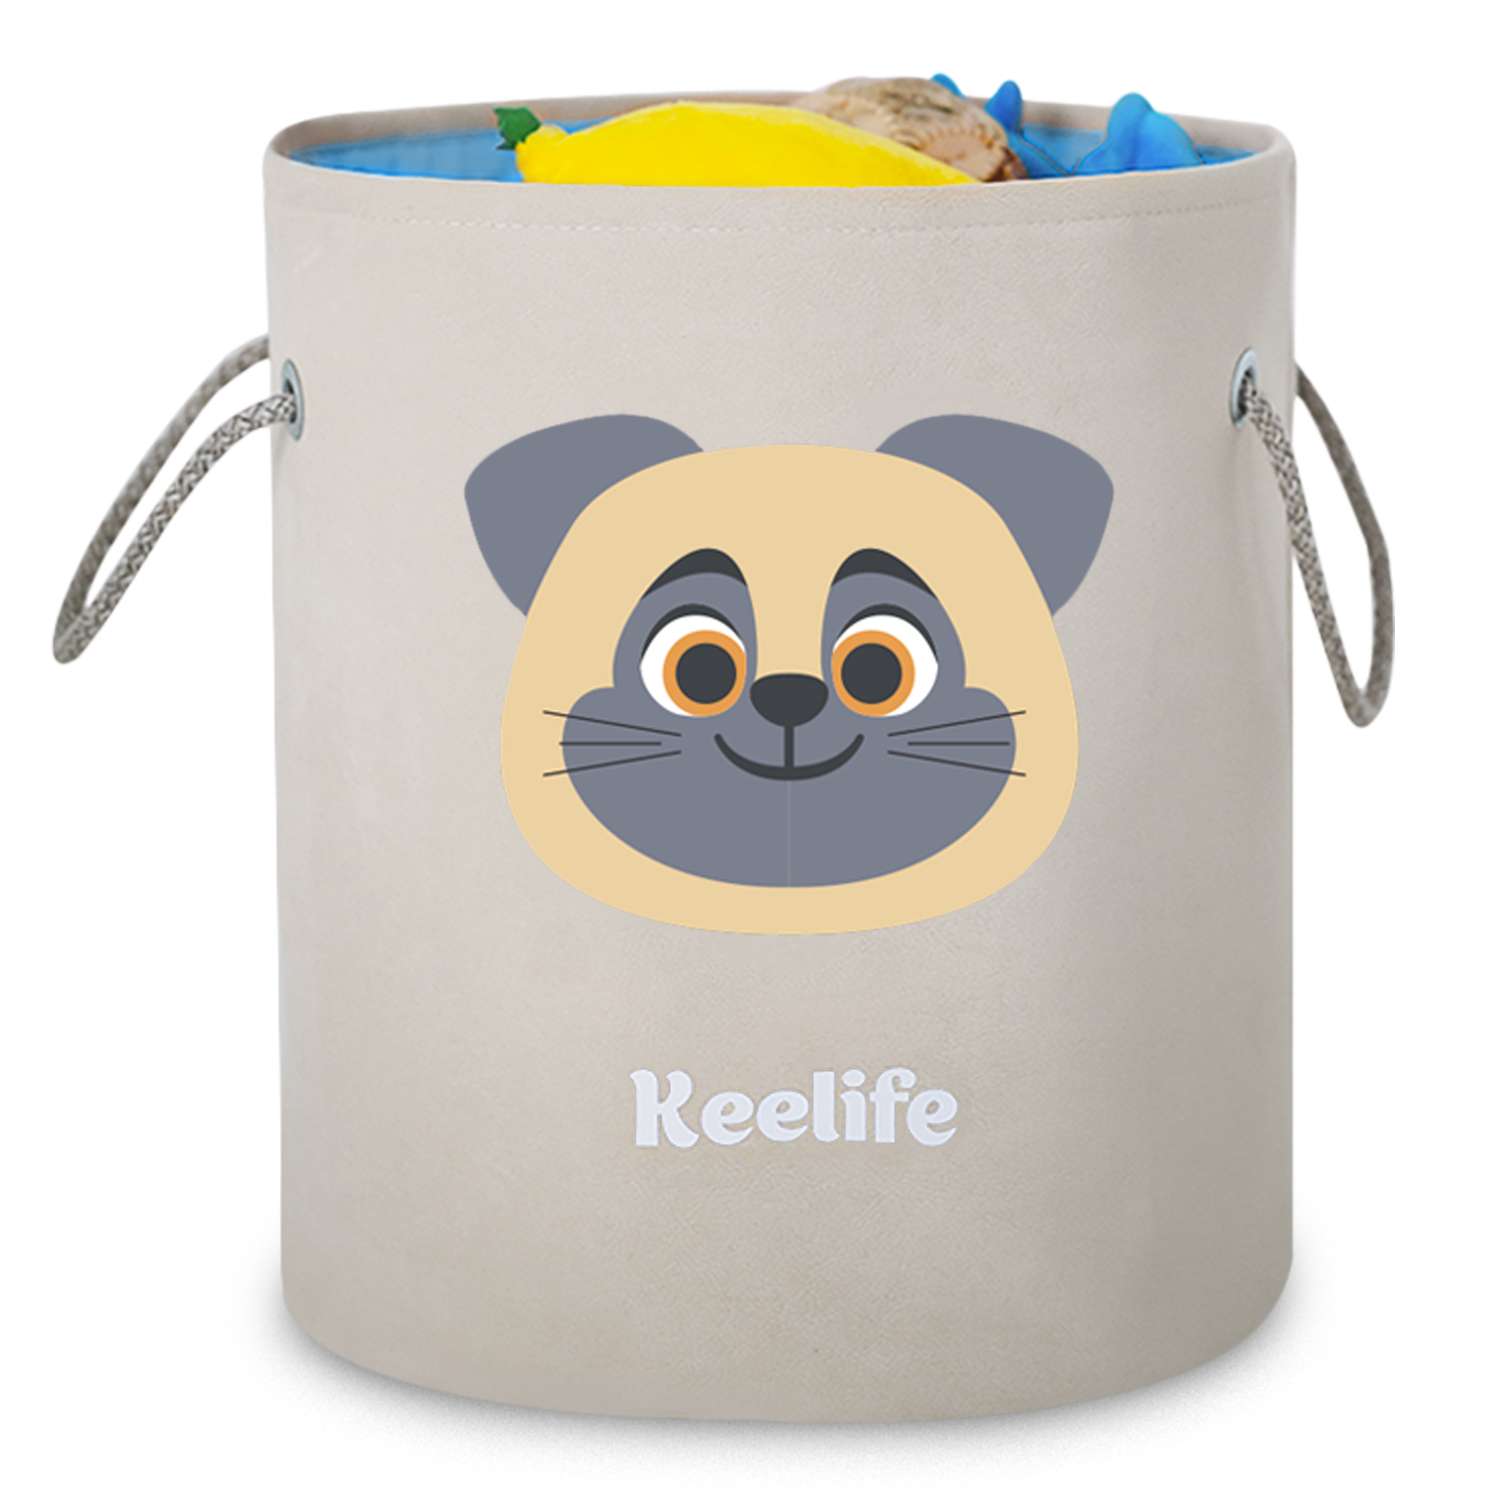 Корзина для игрушек Keelife органайзер для хранения Собака молочный-голубой 33х38см - фото 1